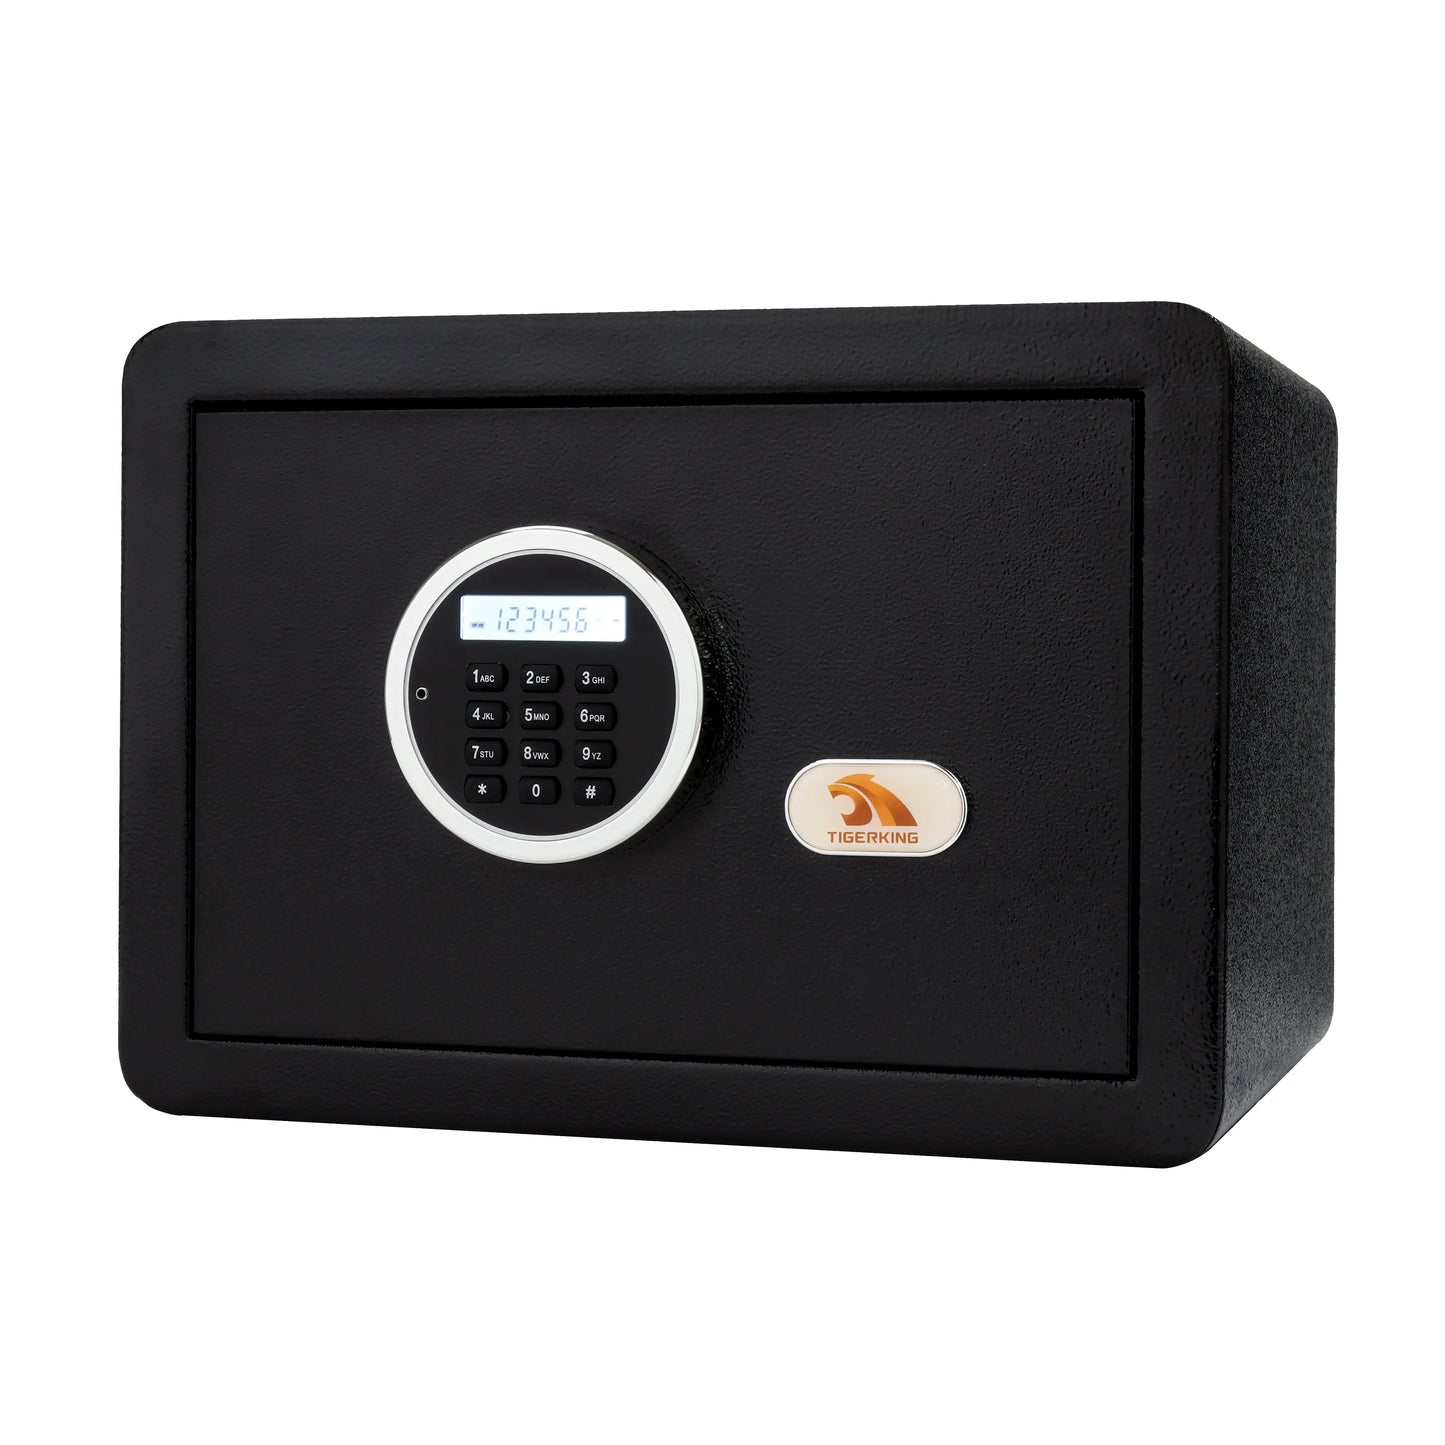 TIGERKING Mini Digital Keypad Safe 1 Cubit Feet Black E25LK TIGERKING SAFE